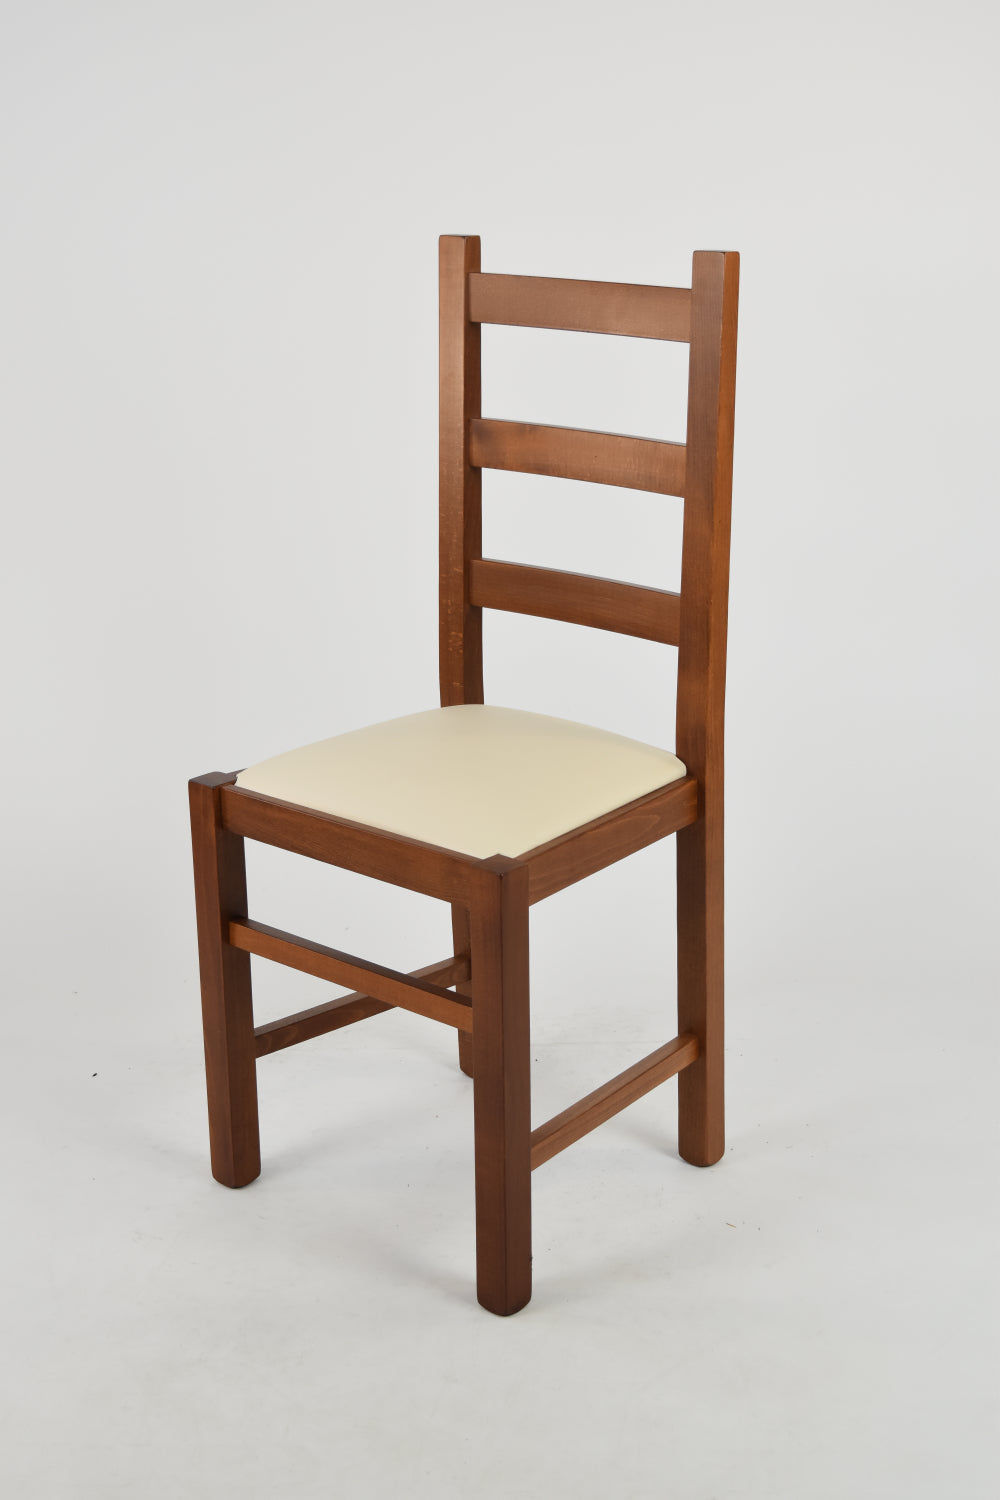 Tommychairs - Set 2 sillas de Cocina y Comedor  Rustica, Estructura en Madera de Haya Color Nogal Claro y Asiento tapizado en Polipiel Color Marfil